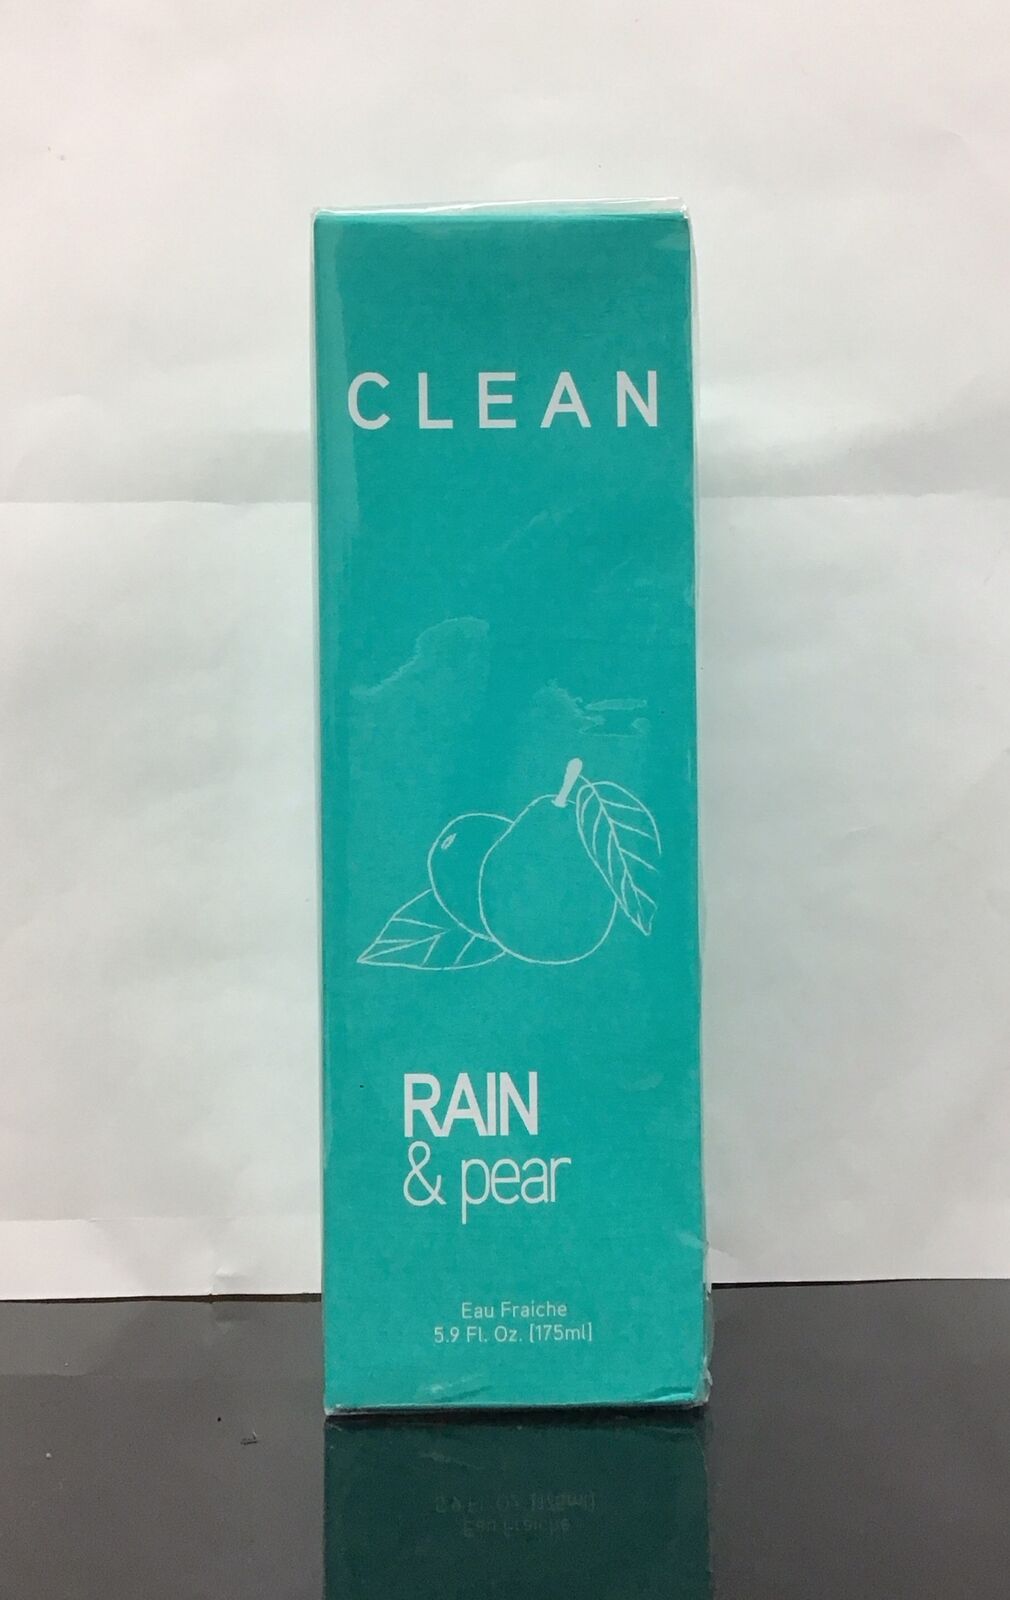 Clean Rain & Pear Eau Fraiche Spray 5.9 Fl Oz, As Pictured.